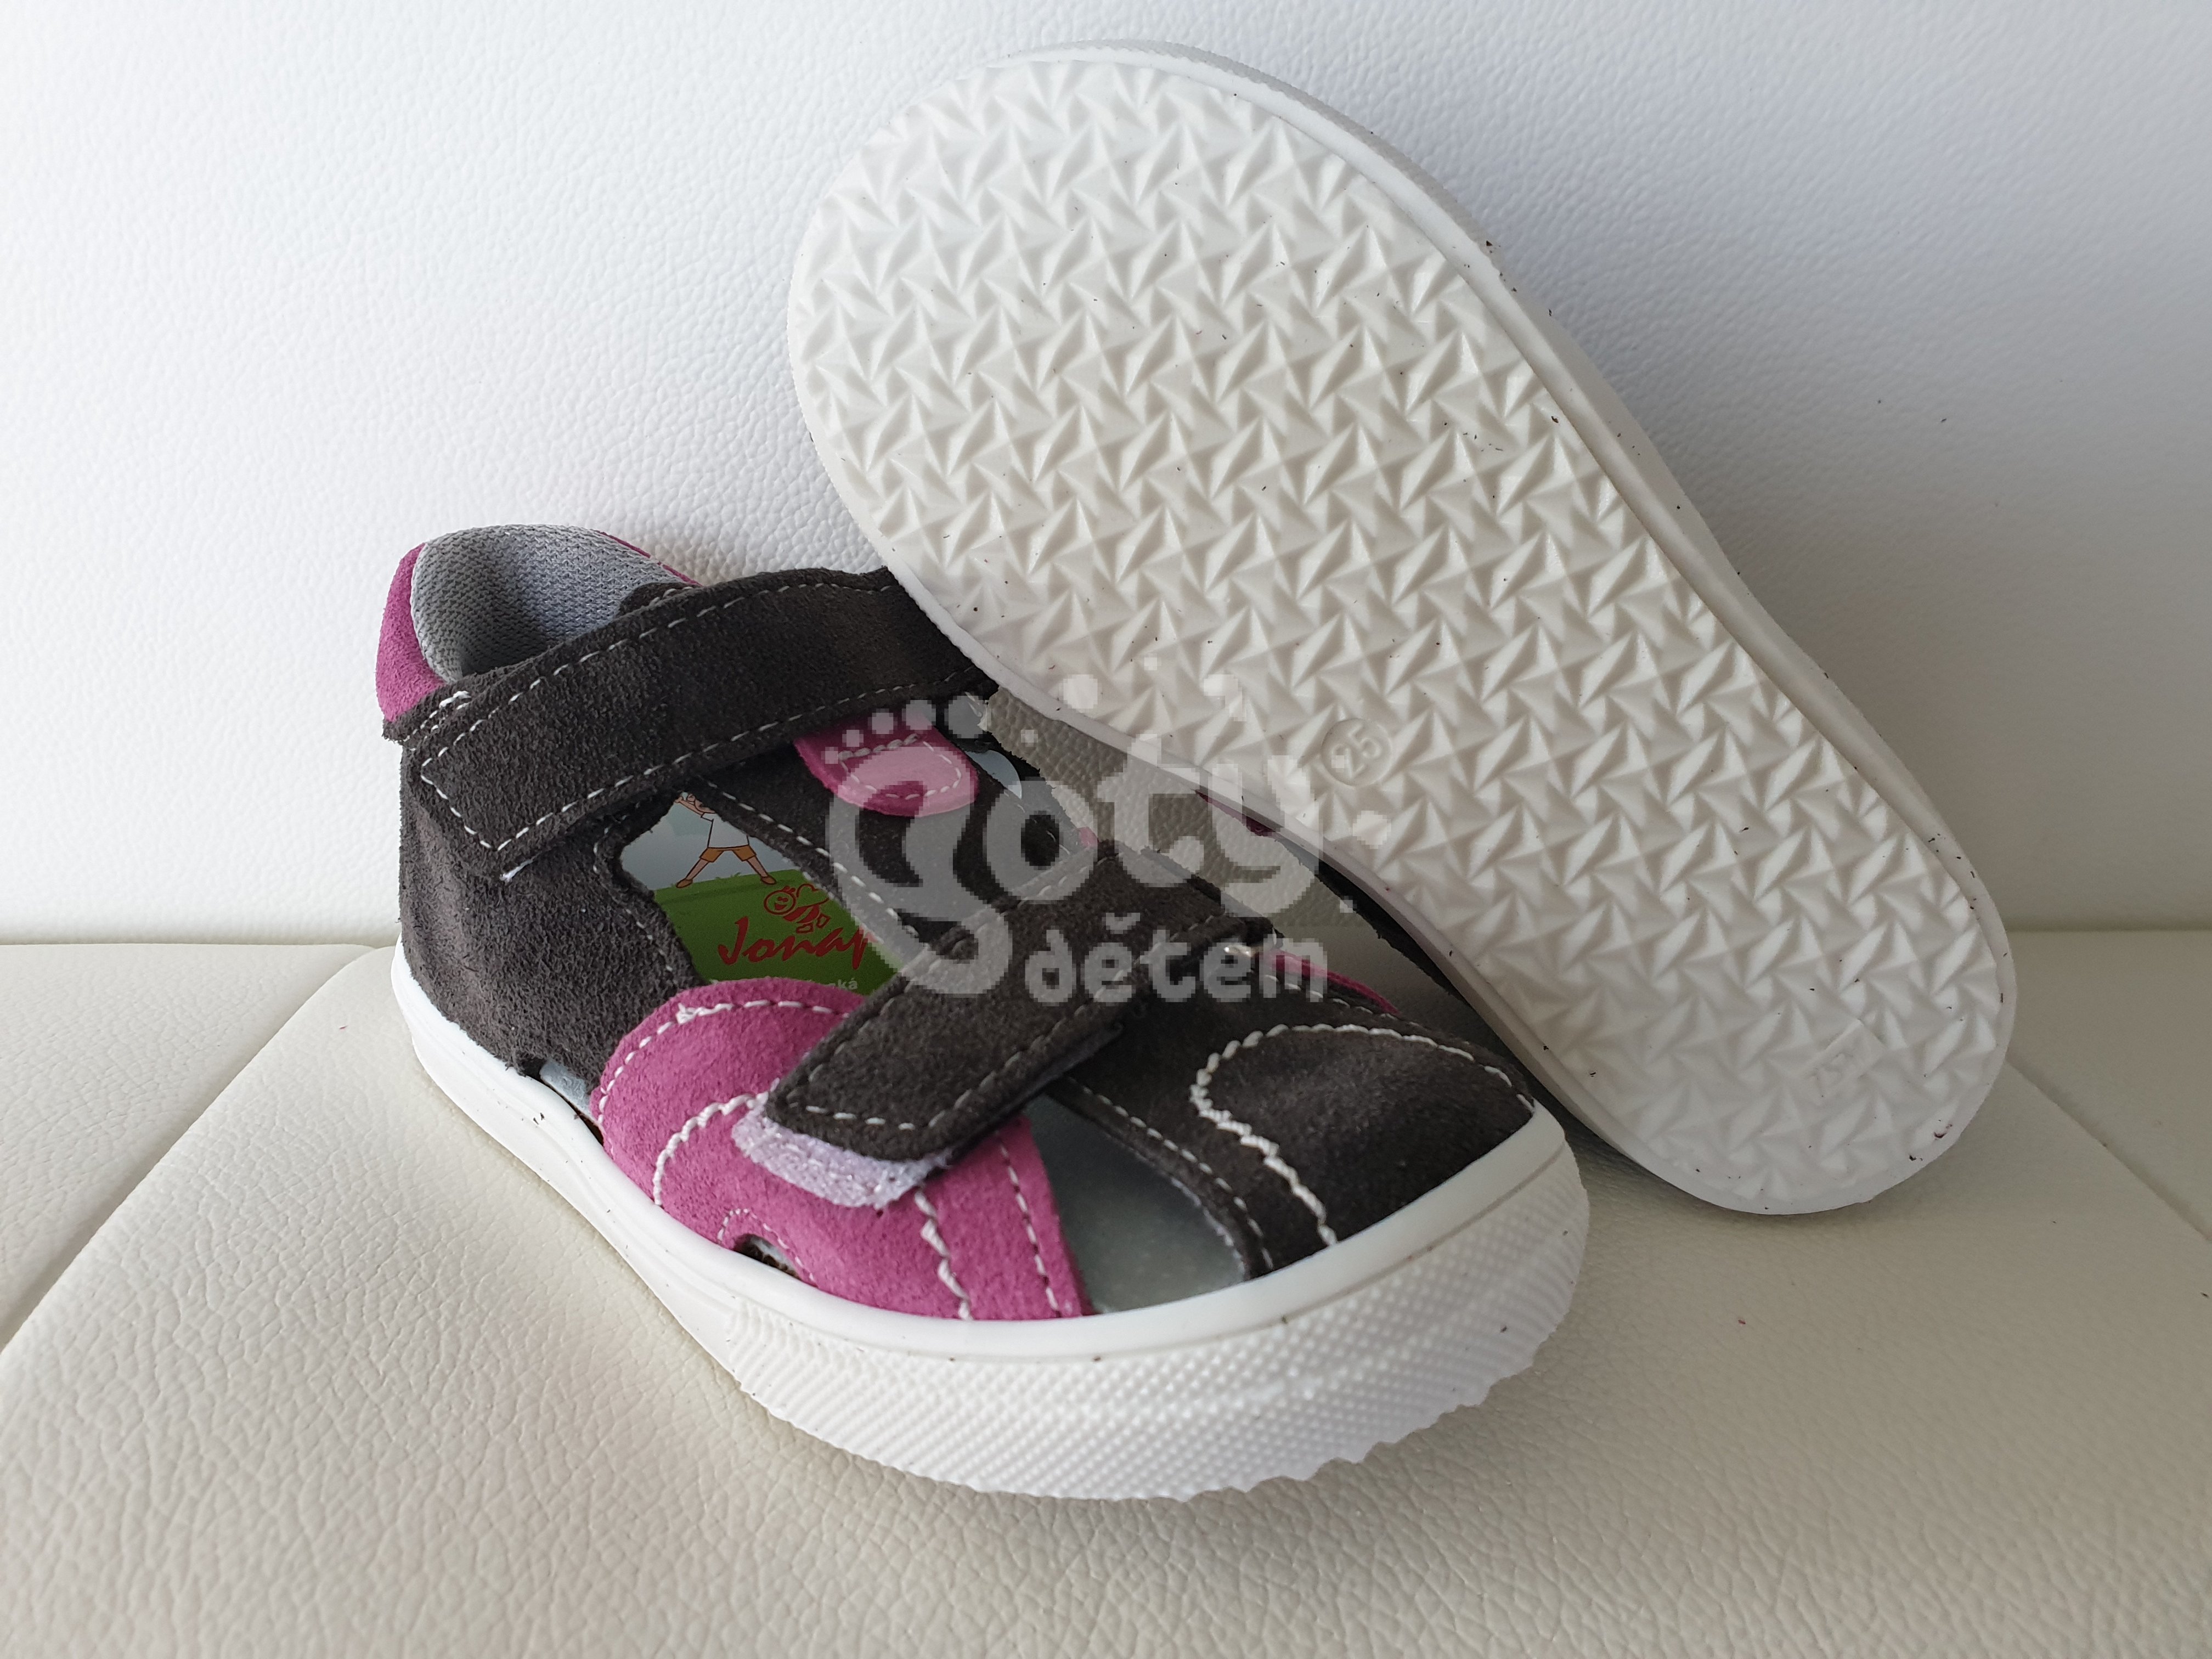 Jonap kožené sandálky 036 S šedá růžová